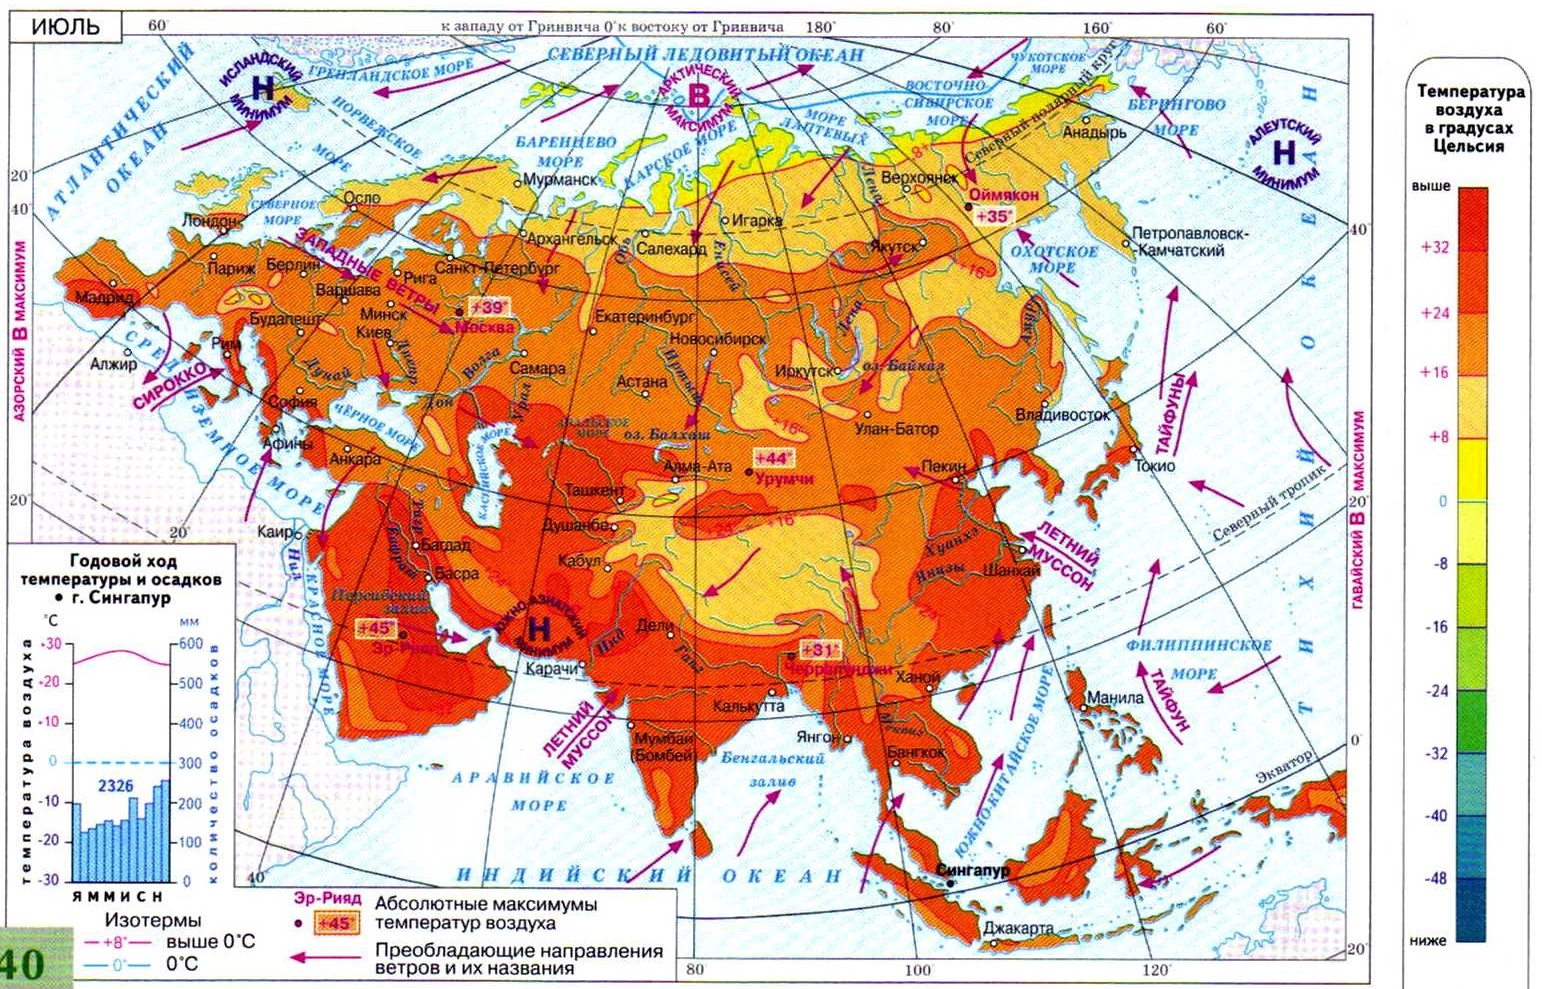 Какие природные зоны есть в евразии. Карта климата Евразии 7 кл. Климатическая карта Евразии. Карта климатических зон Евразии. Температурные зоны Евразии.